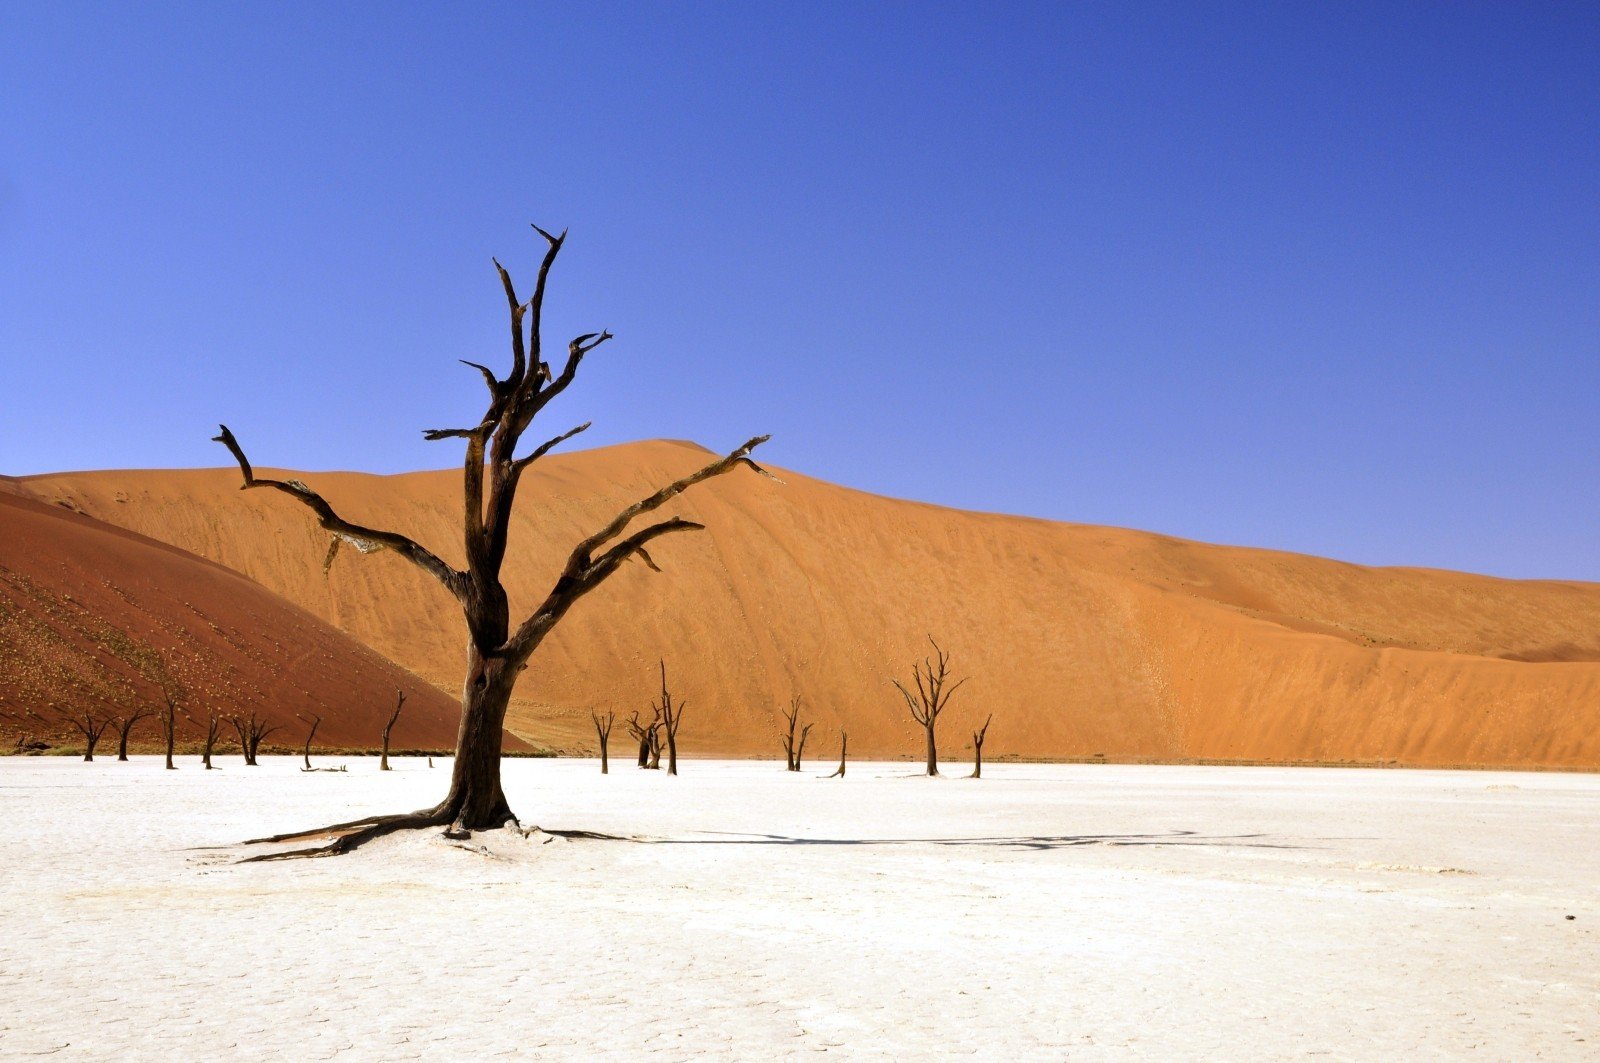 Desert in Namibia